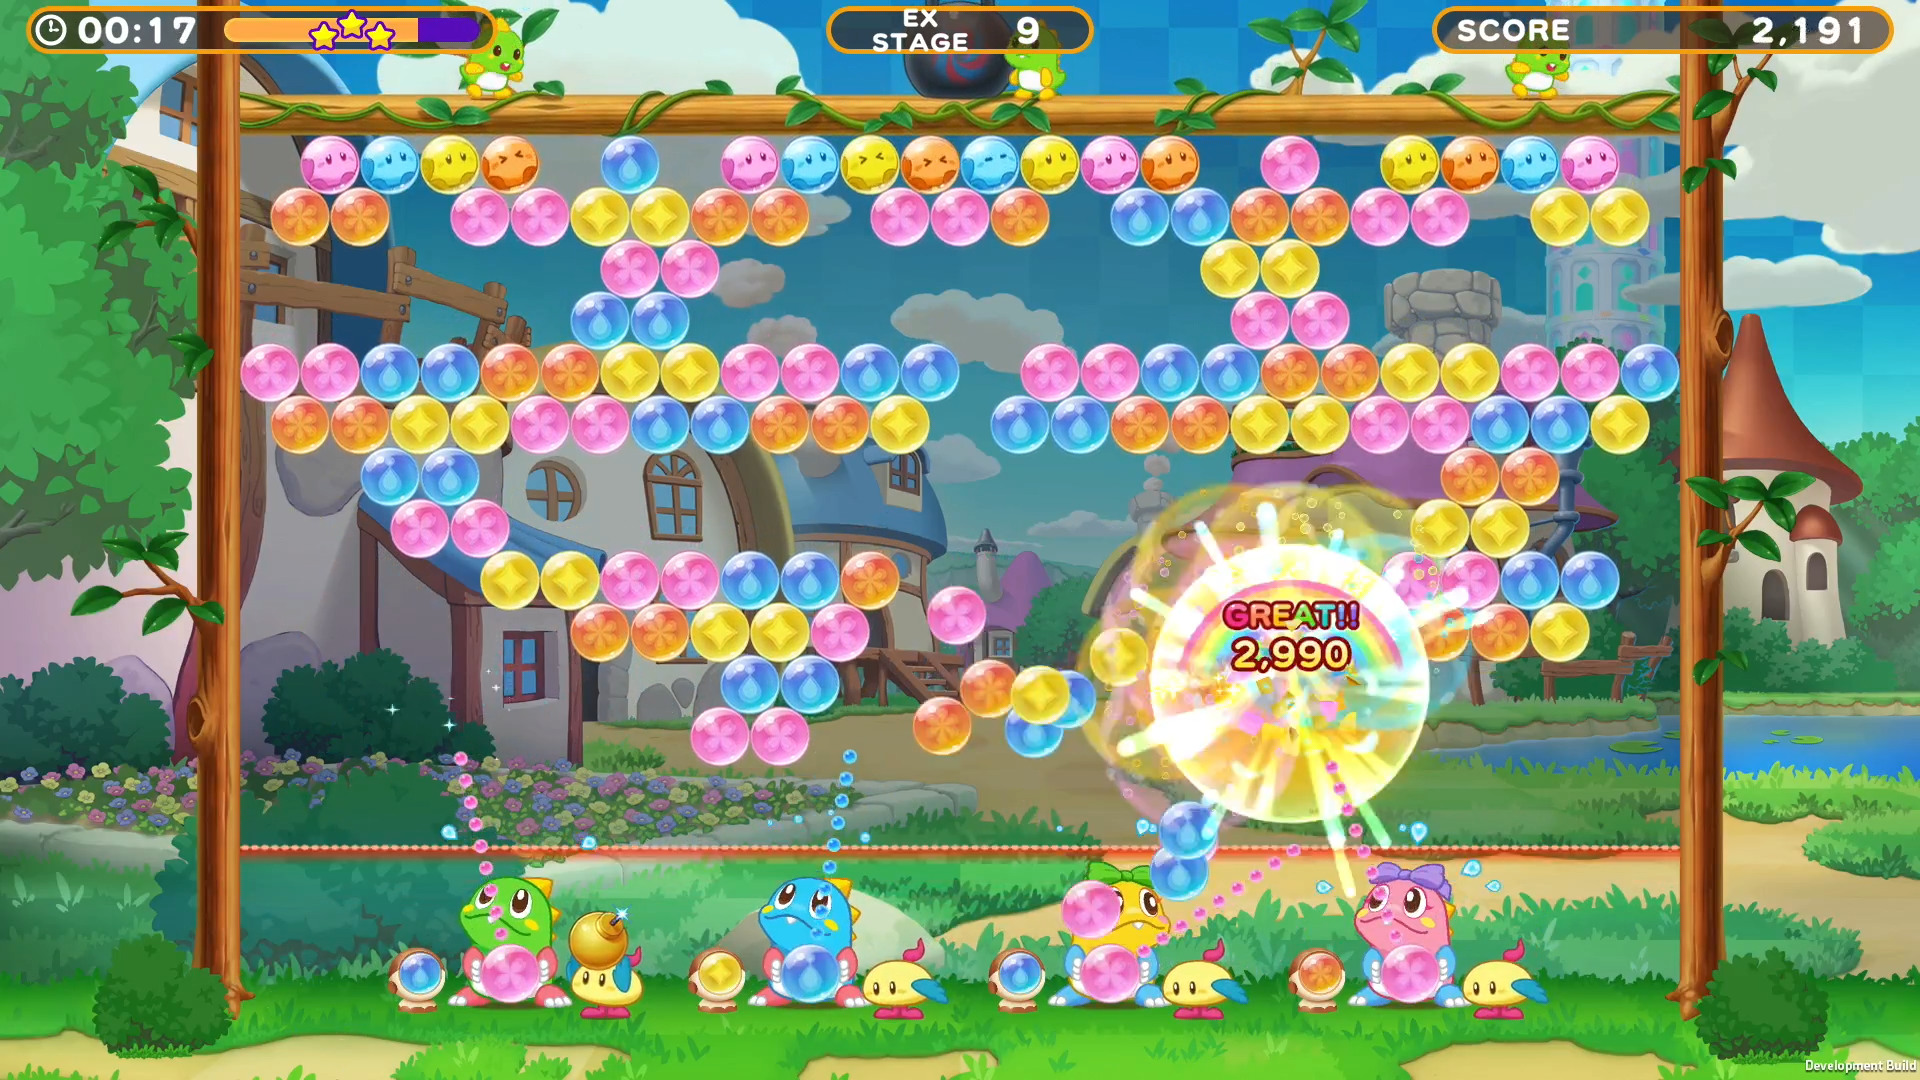 Puzzle Bobble Everybubble! (Switch) será lançado em 23 de maio